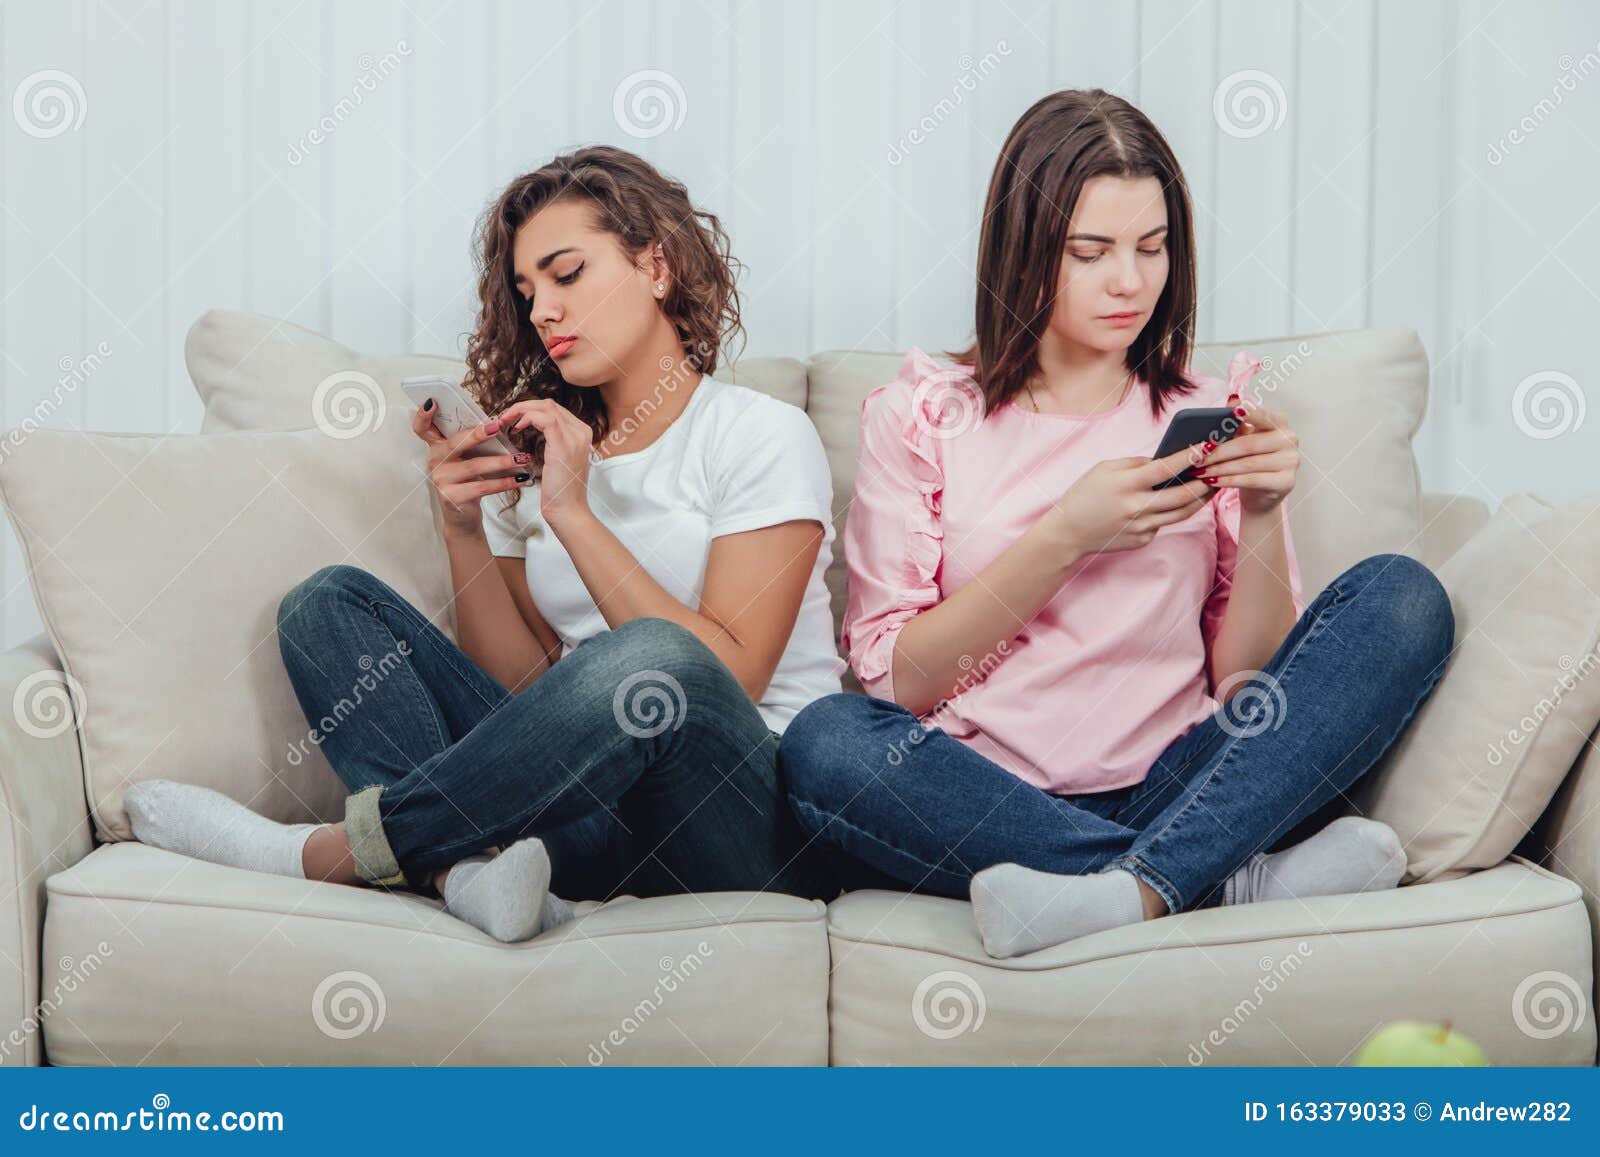 Подруга сидит в телефоне. Подруги сидят на диване. Две девушки сидят на диване. Две подруги на диване. Две подружки сидят в смартфоне.